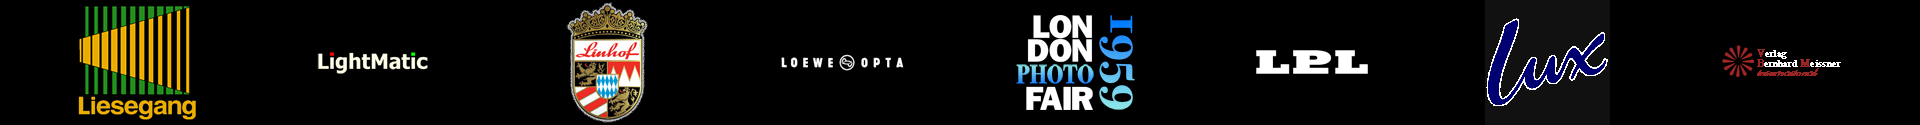 logo-slider-L11-L17+M1-vWA24